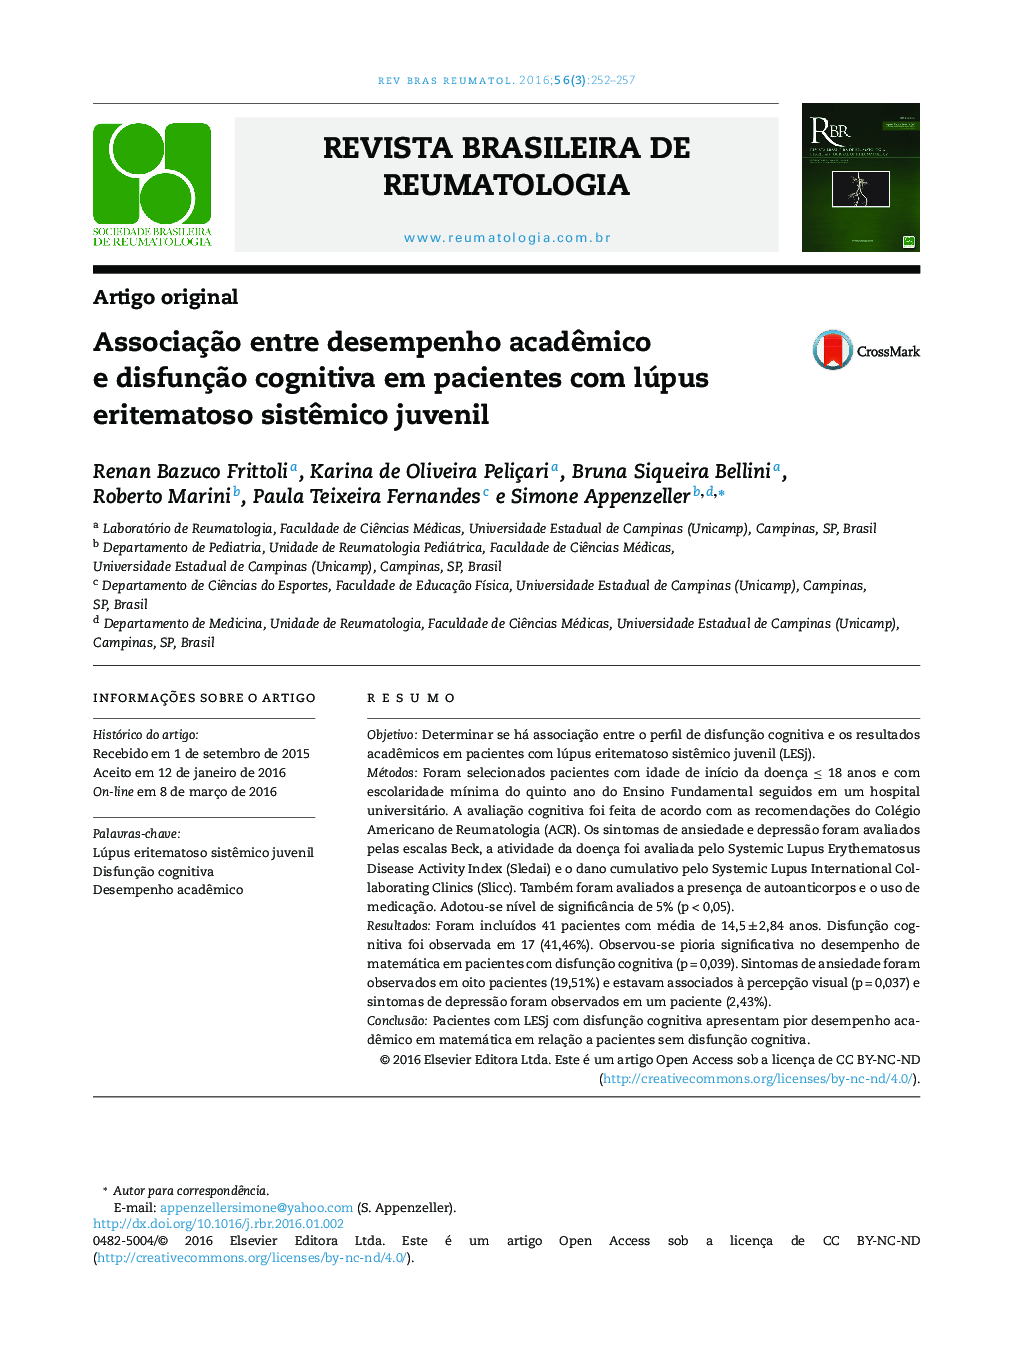 Associação entre desempenho acadêmico e disfunção cognitiva em pacientes com lúpus eritematoso sistêmico juvenil